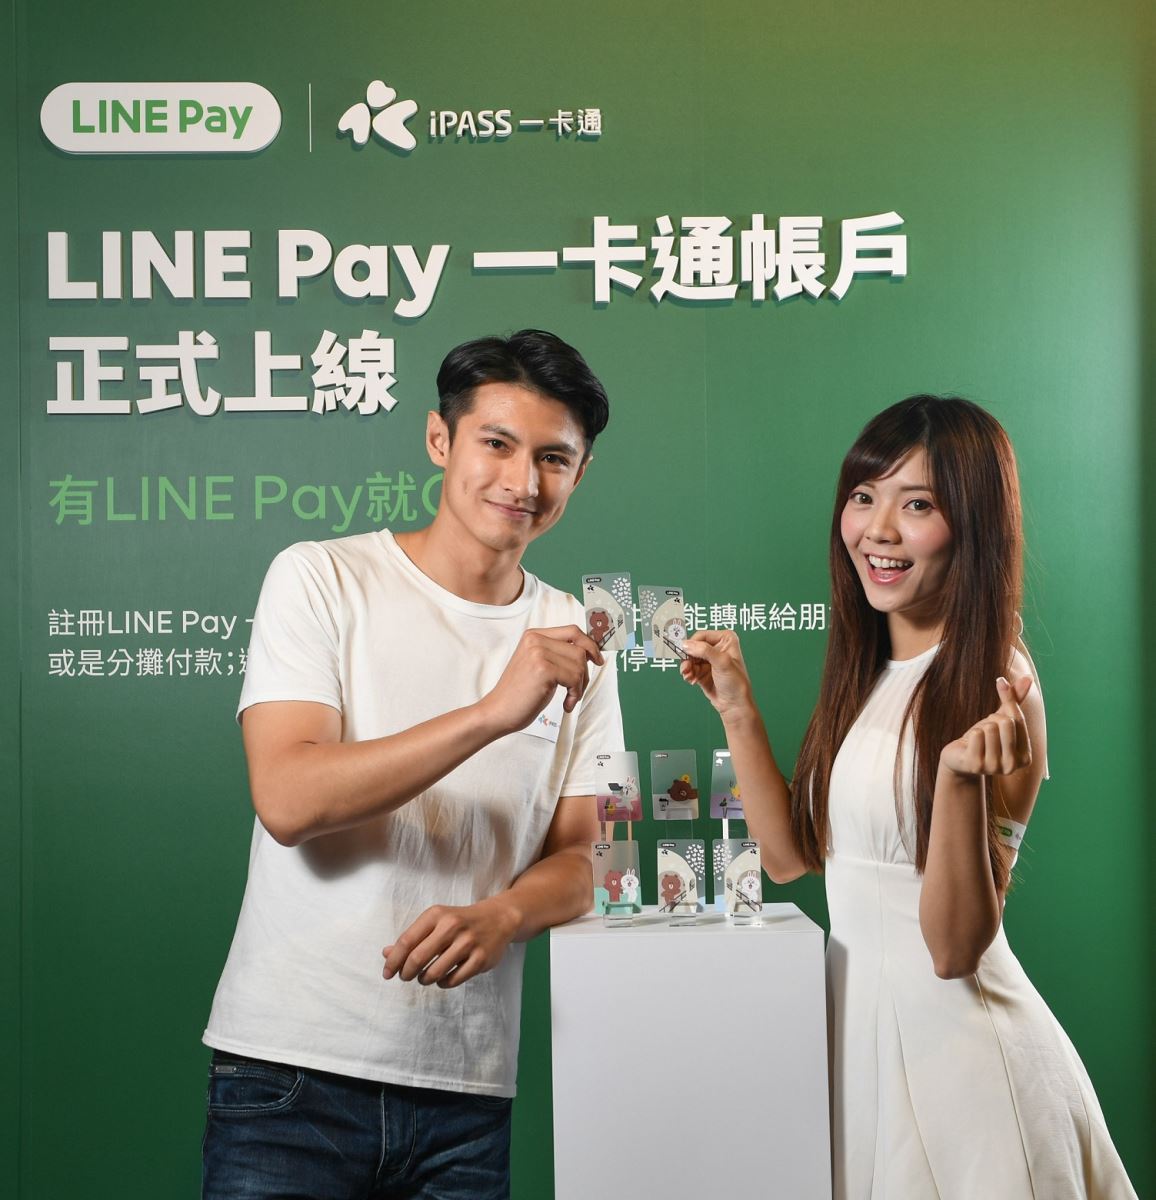 「LINE Pay 一卡通帳戶」正式上線1